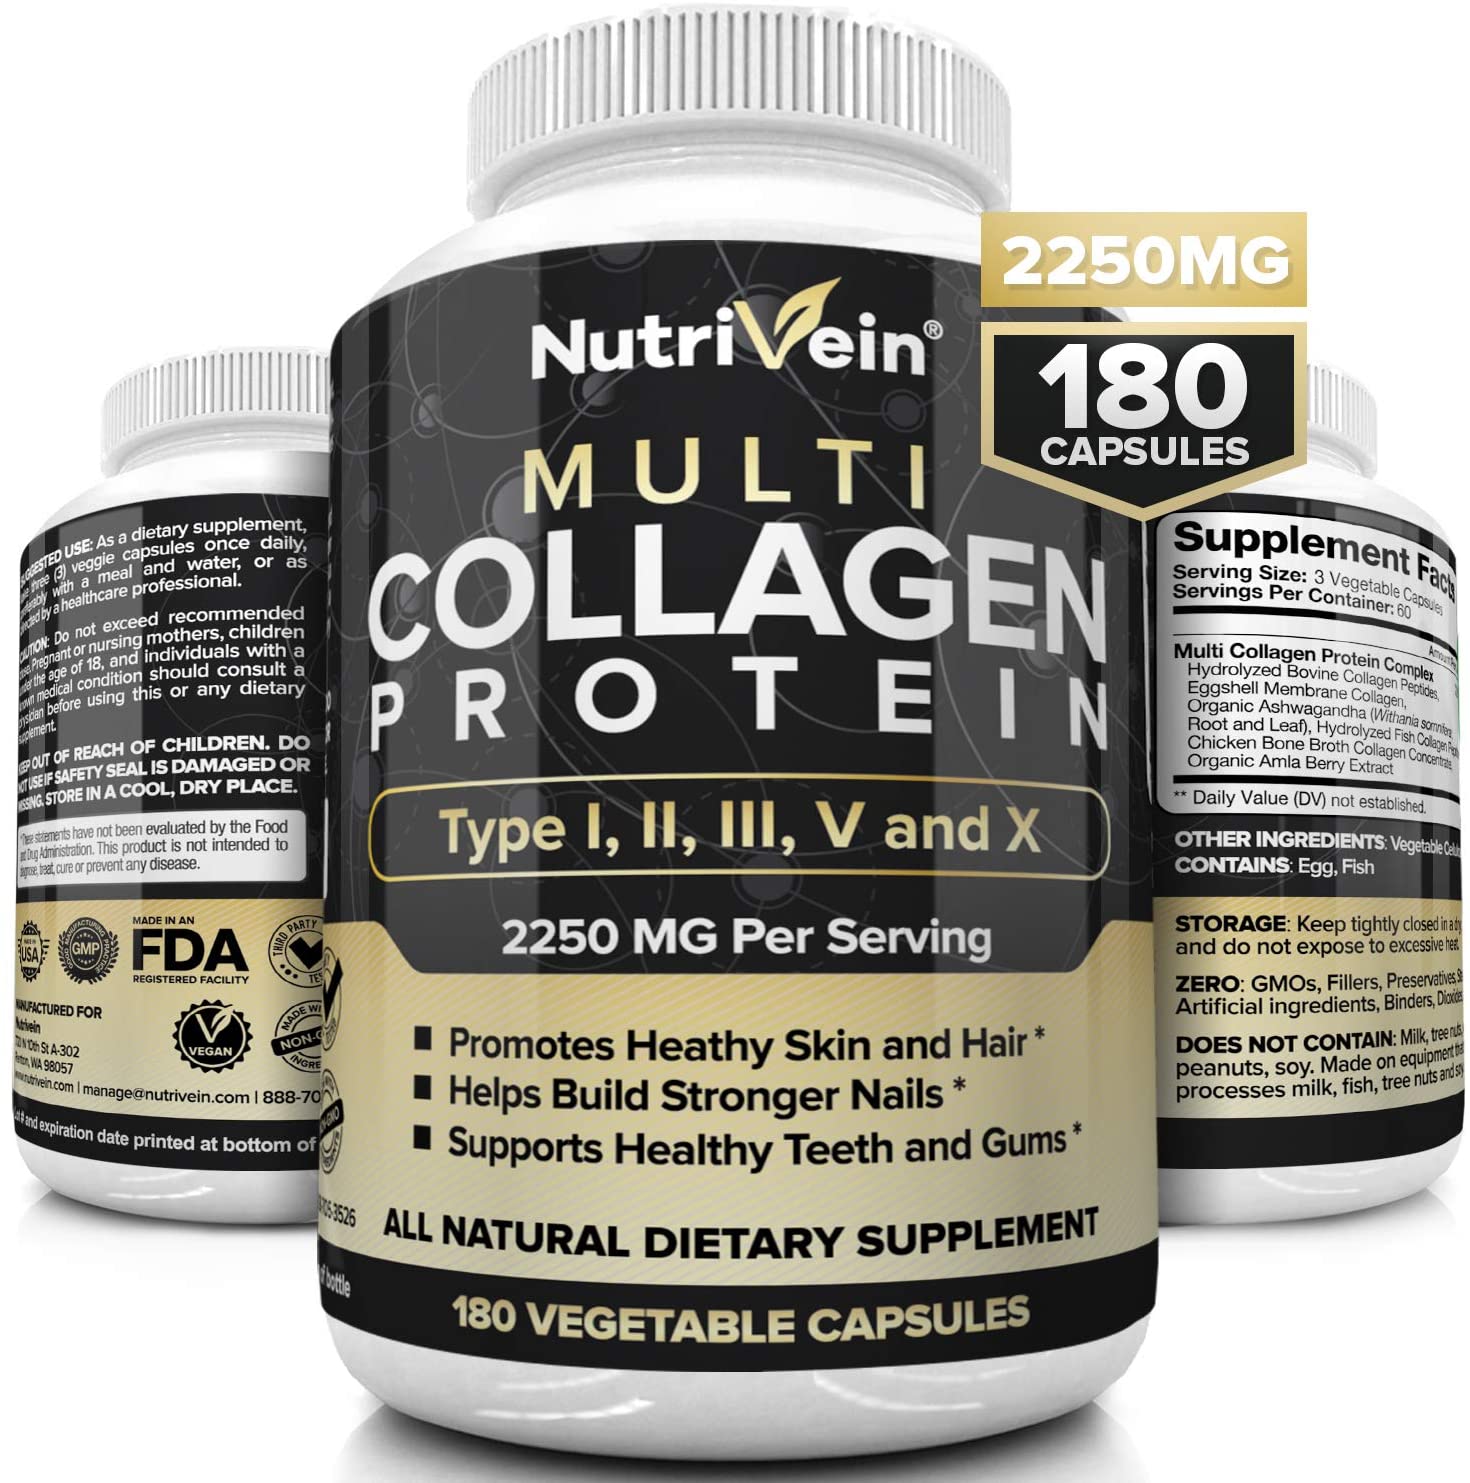 6. Nutrivein Multi Collagen Pills